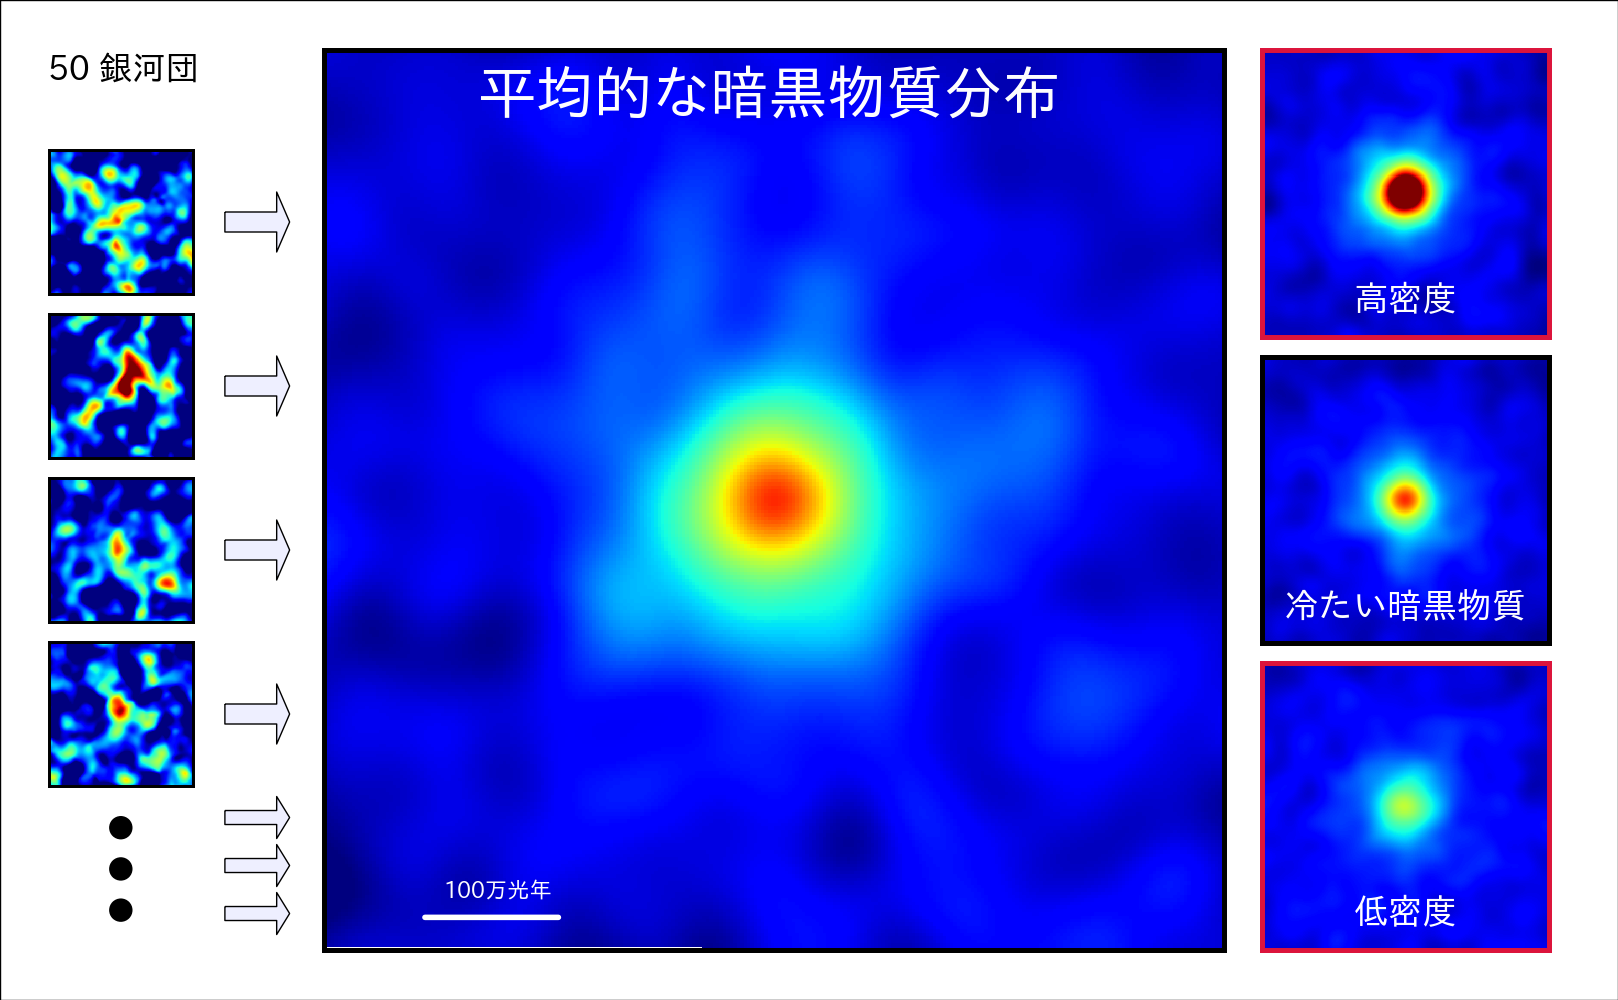 図２: 個々の銀河団の暗黒物質分布（左）、50個の銀河団を平均した暗黒物質分布(中央)、 暗黒物質モデルによるシミュレーション（右）。冷たい暗黒物質モデル（右パネル中央）が観測された平均の暗黒物質分布と一致することがわかります。青&rarr;緑&rarr;黄&rarr;赤の色の順に暗黒物質の密度が高くなります。また、中央パネルの白い線は100万光年の長さを表します。(Credit: NAOJ/ASIAA/School of Physics and Astronomy, University of Birmingham/Kavli IPMU/Astronomical institute, Tohoku University)